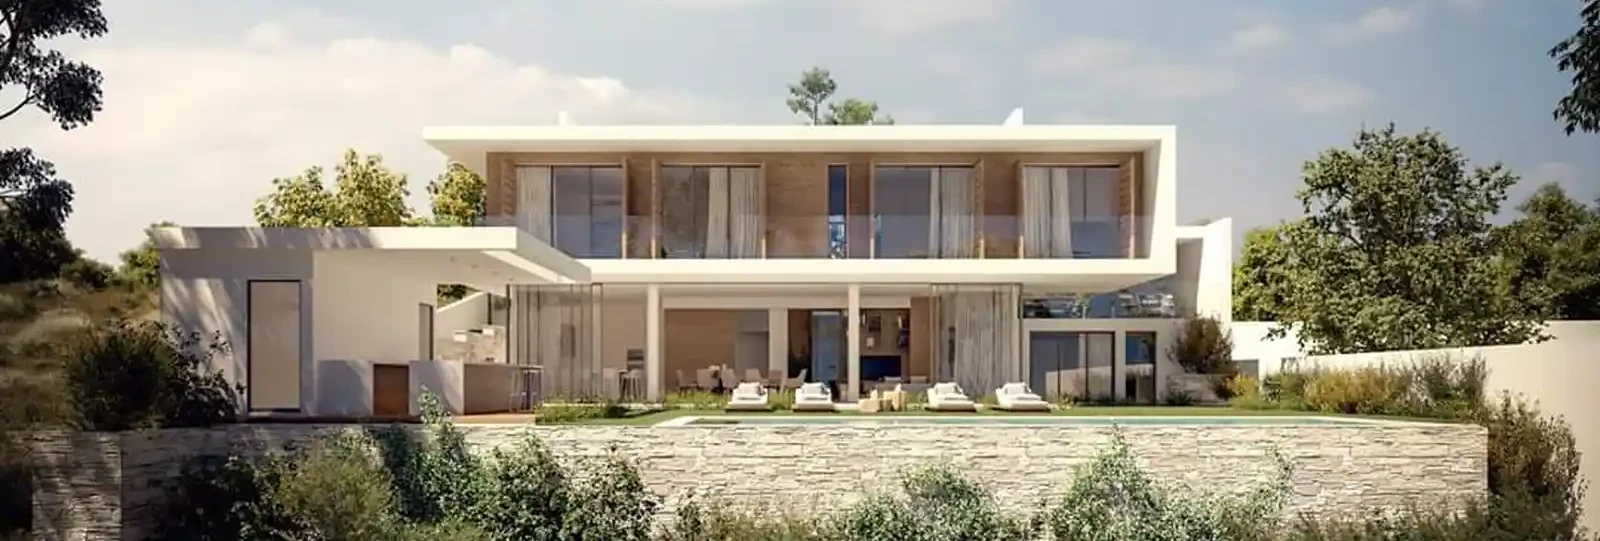 4-bedroom villa to rent €6.000, image 1